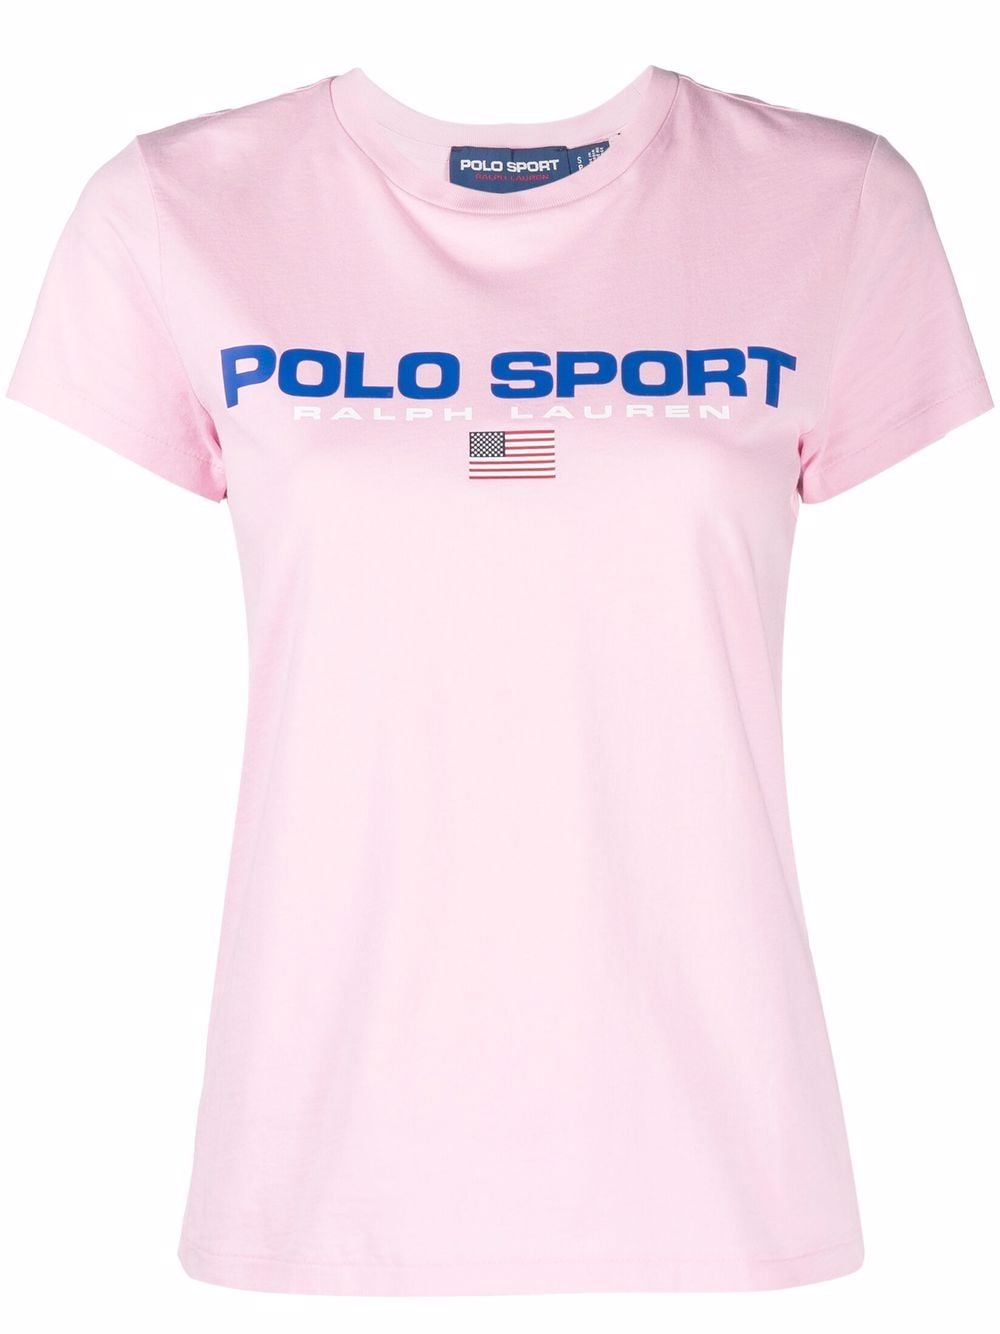 фото Polo ralph lauren футболка с логотипом